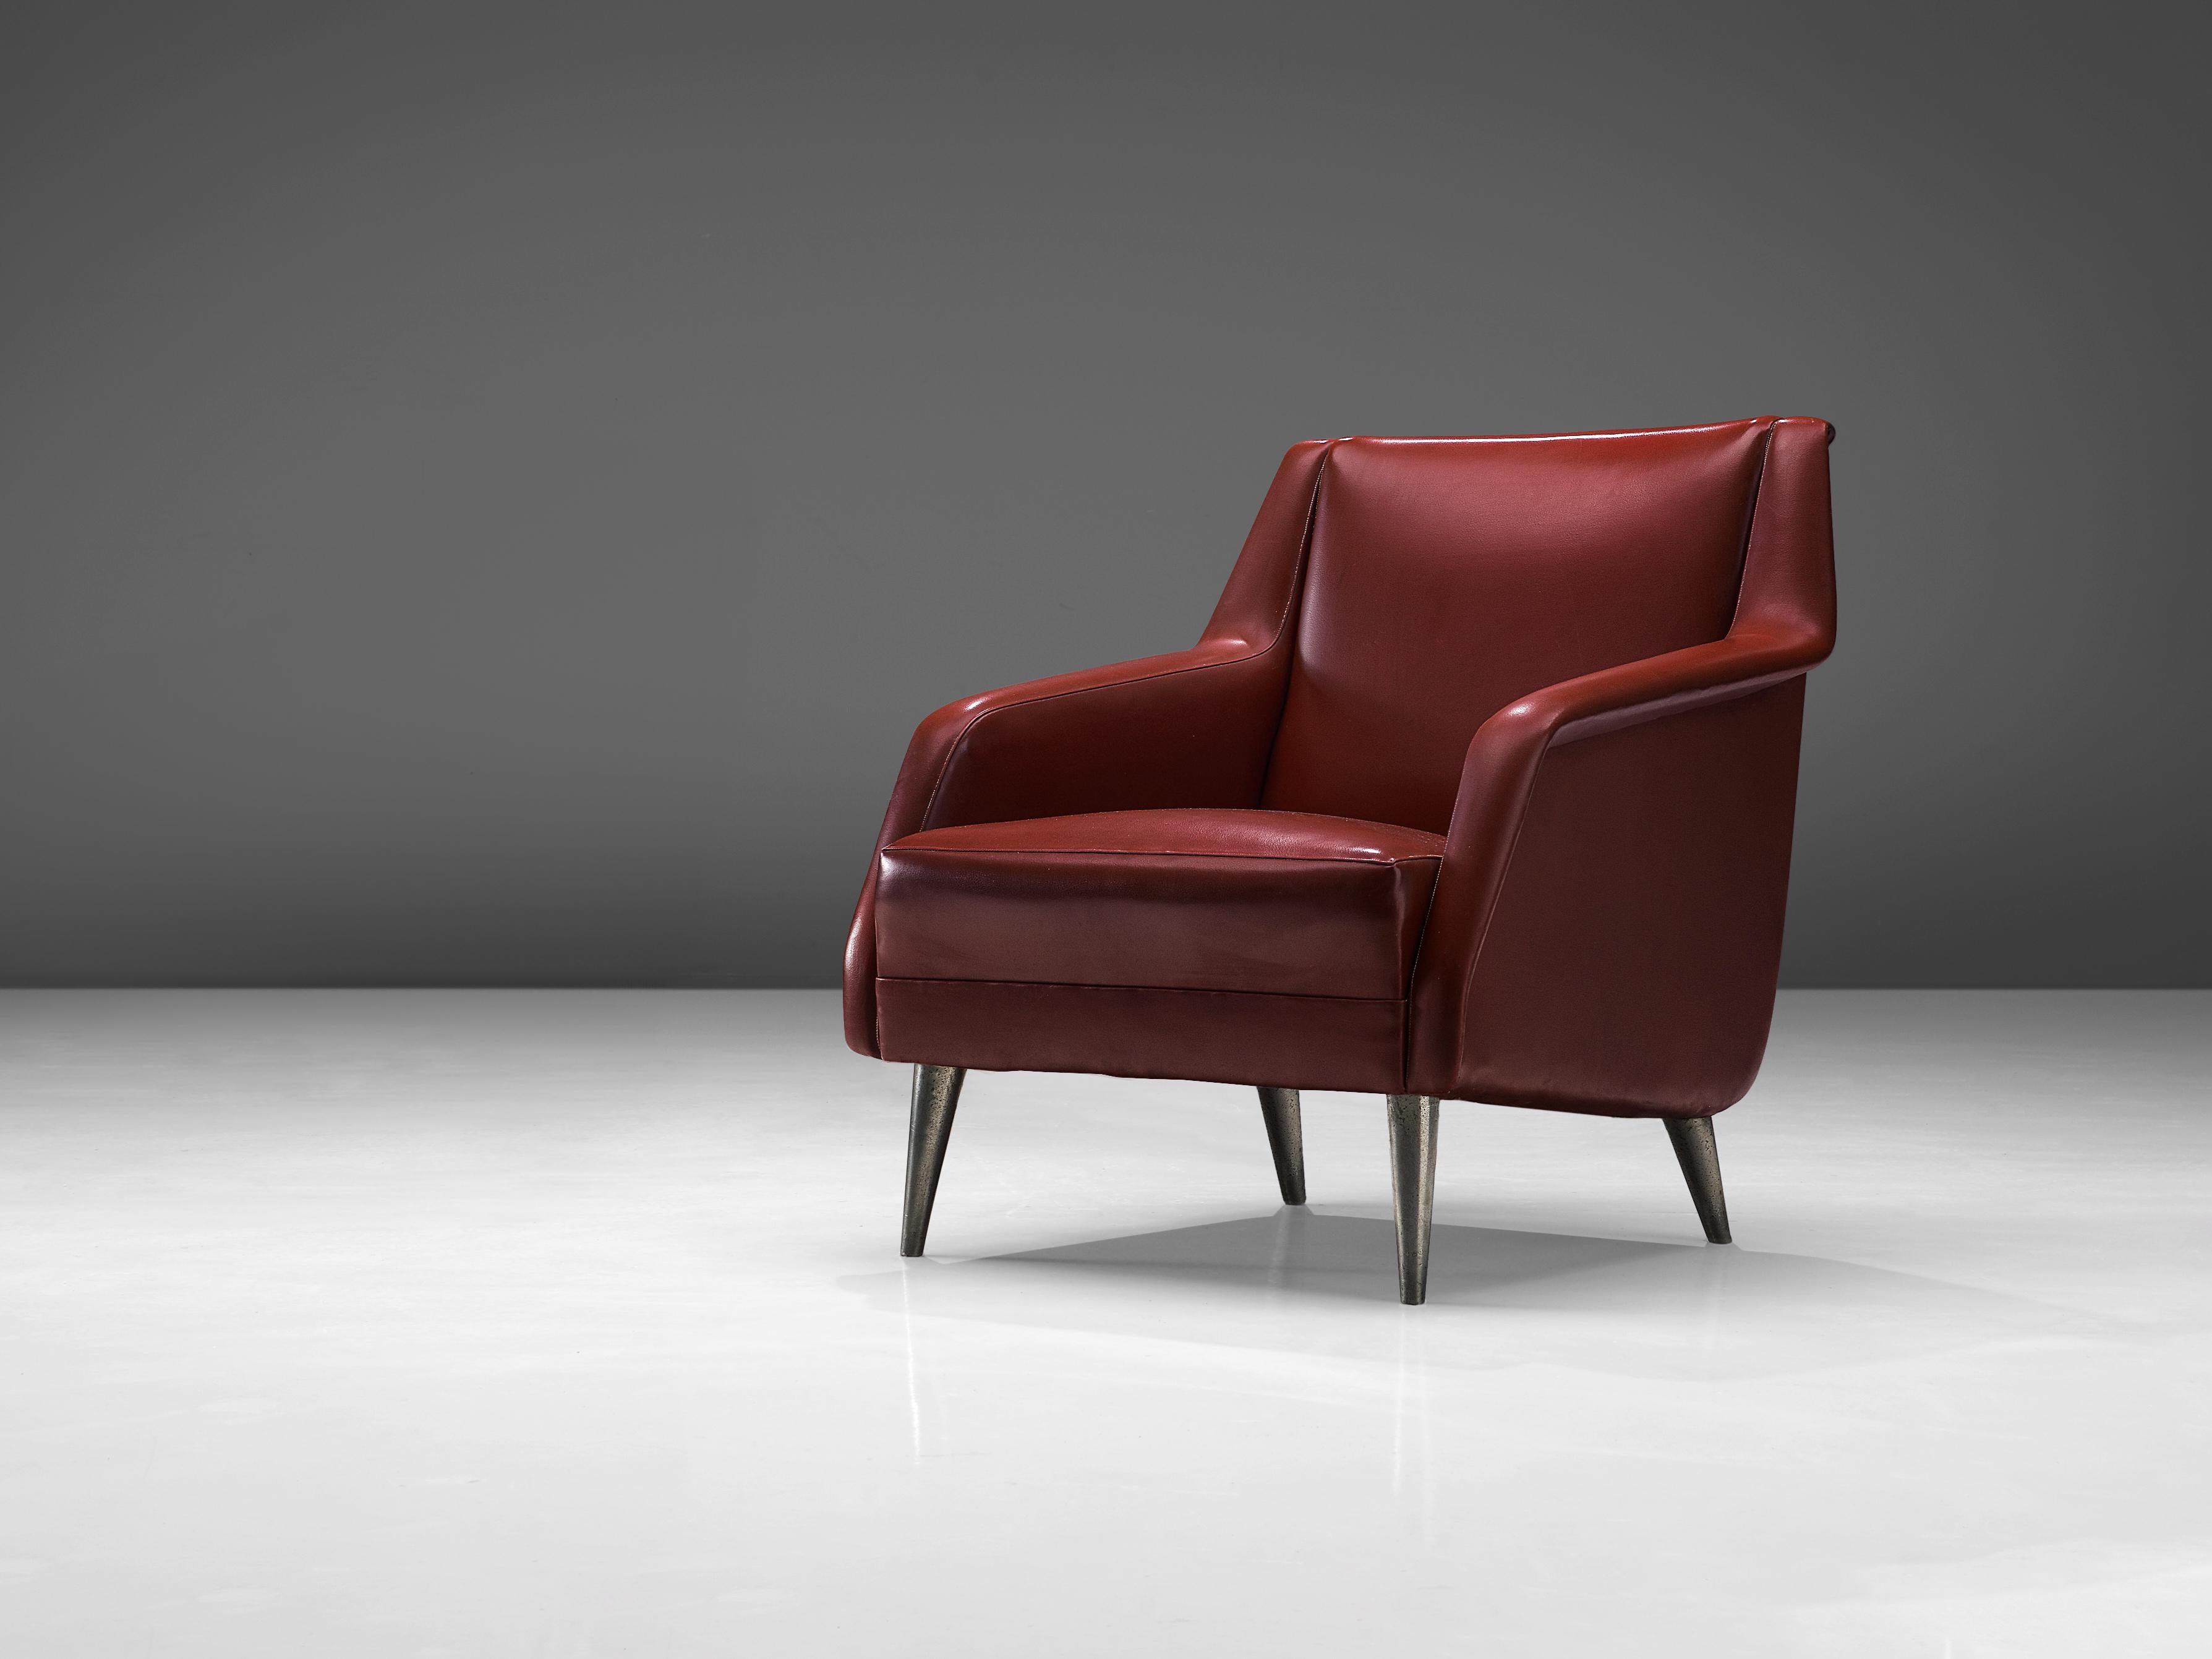 Carlo de Carli, chaise longue, modèle 802, simili-cuir rouge, laiton, Italie, années 1950

Fauteuil très élégant du designer italien Carlo de Carli. L'assise repose sur quatre pieds ronds et effilés en laiton nickelé. Le design est caractérisé par